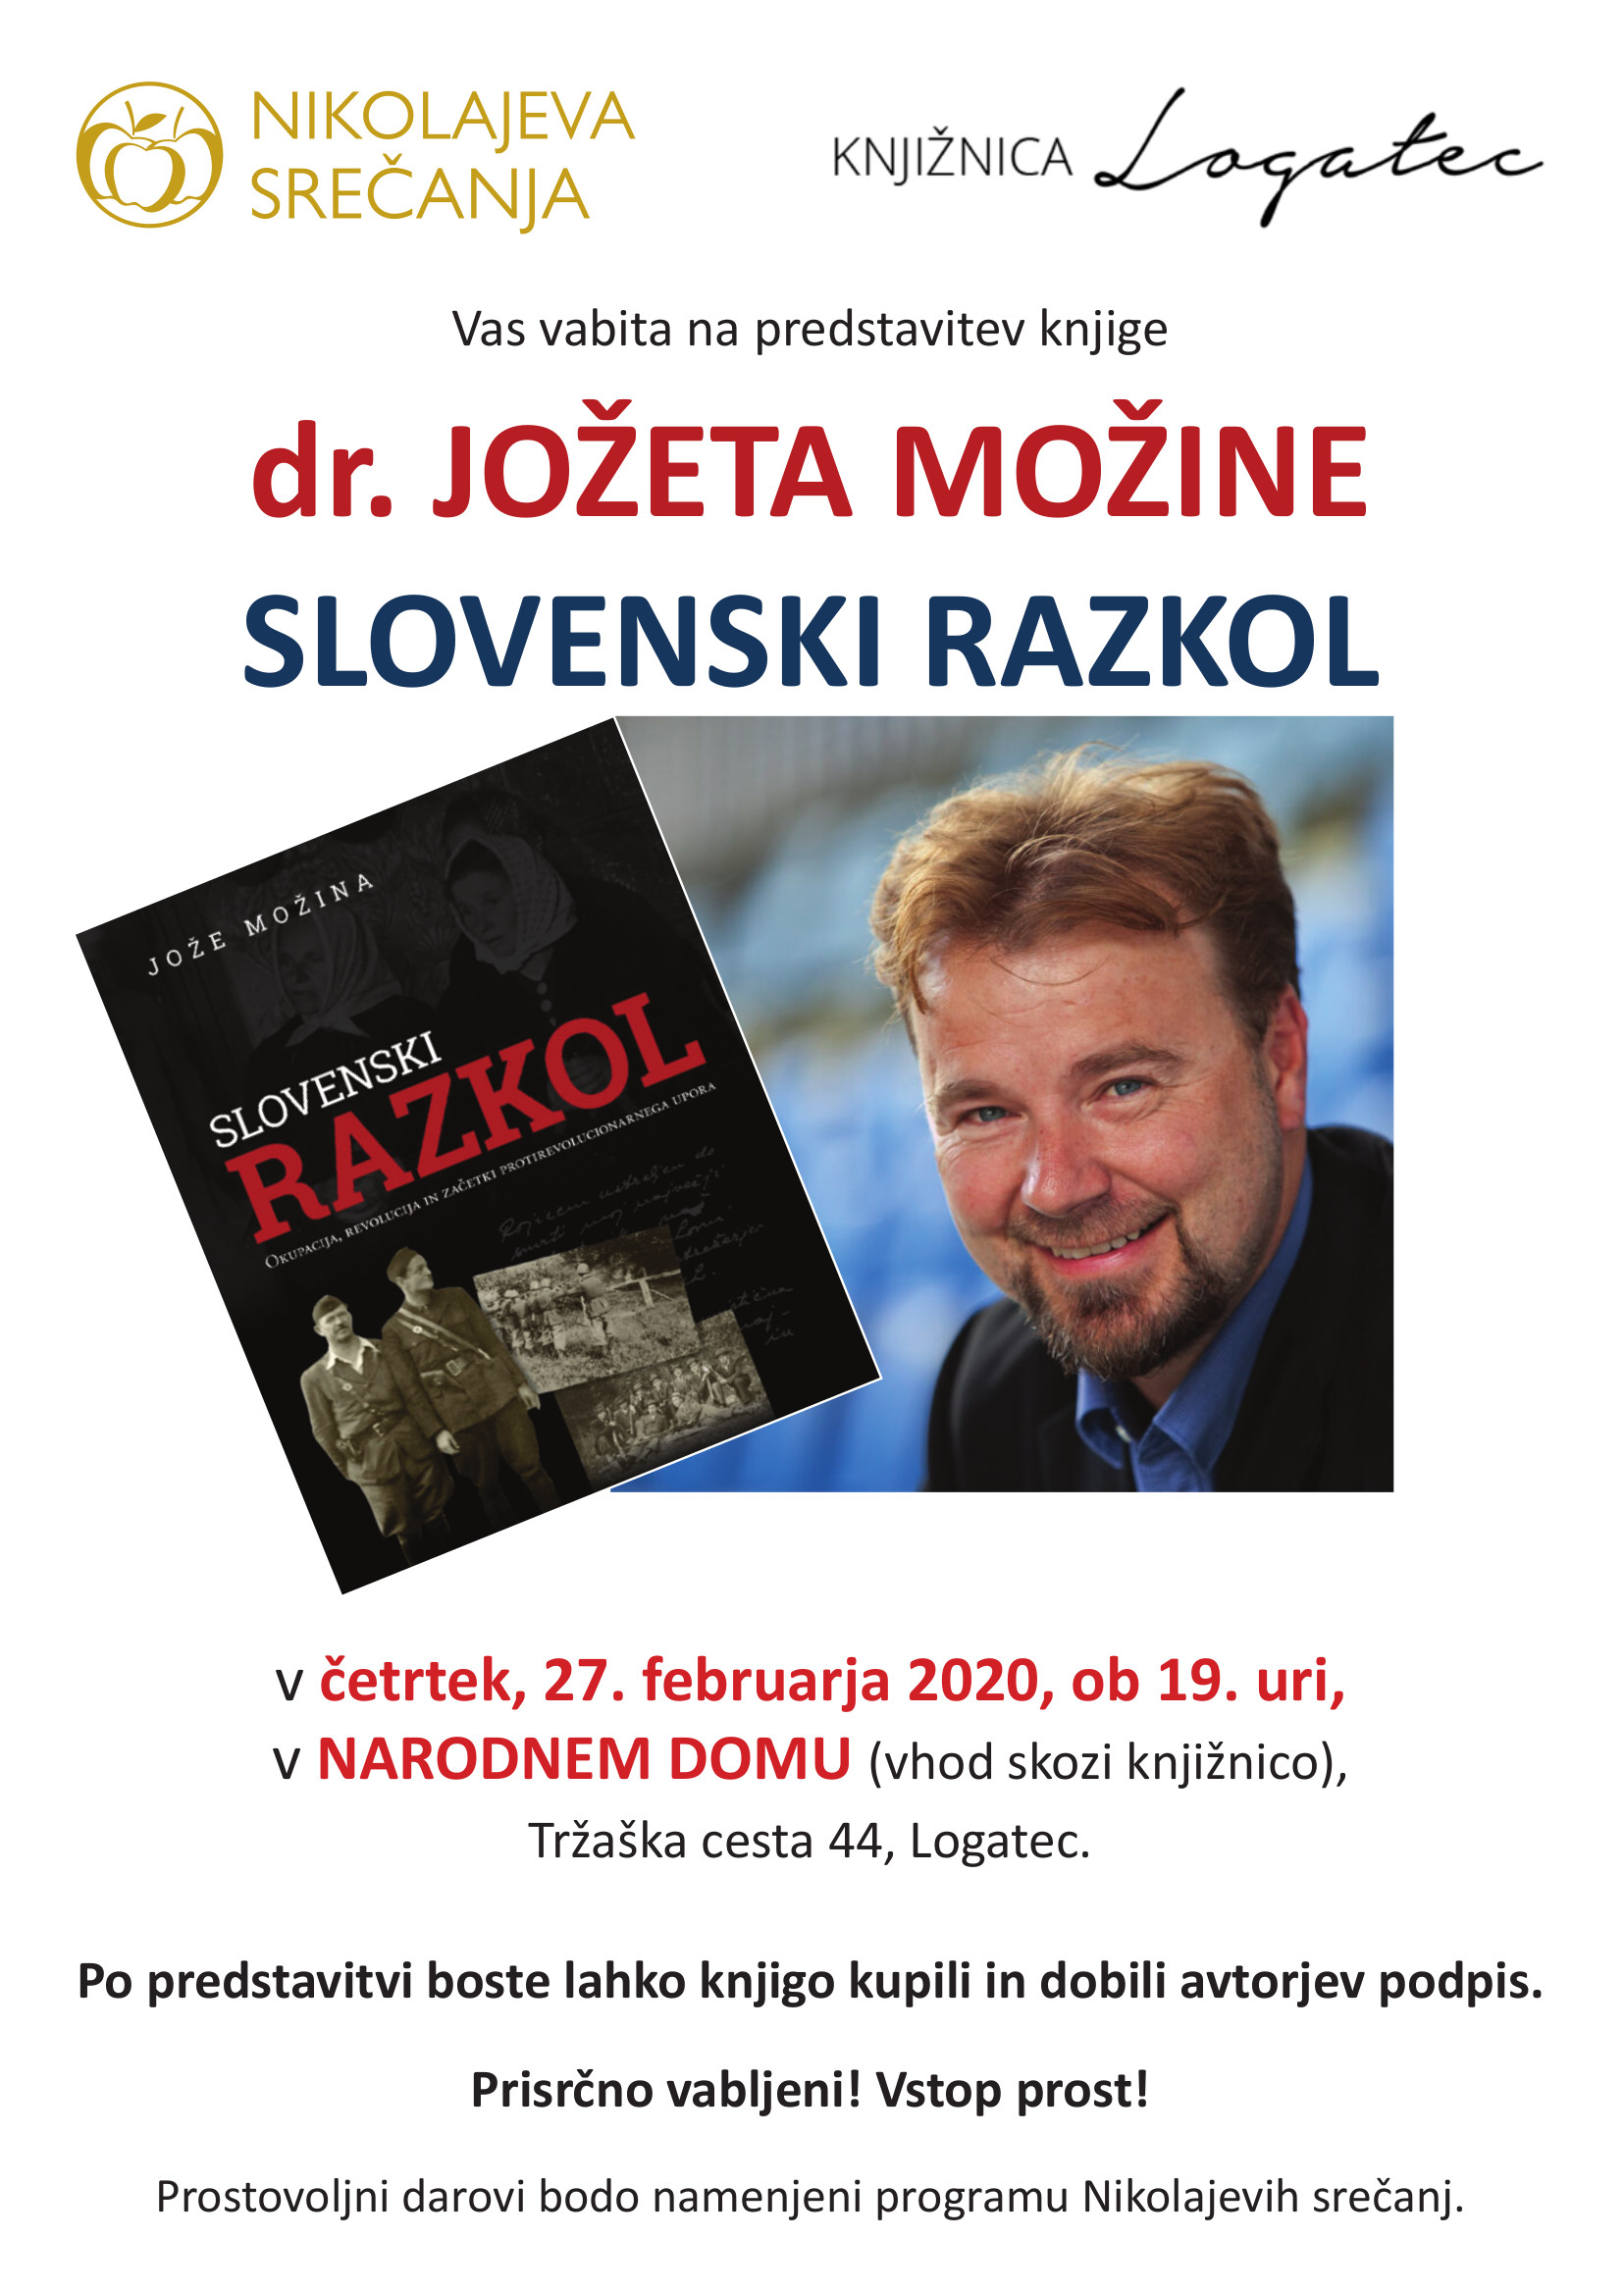 Nikolajeva srečanja in knjižnica Logatec, predstavitev knjige SLOVENSKI RAZKOL, dr. Joze Mozina Logatec 27. februar 2020